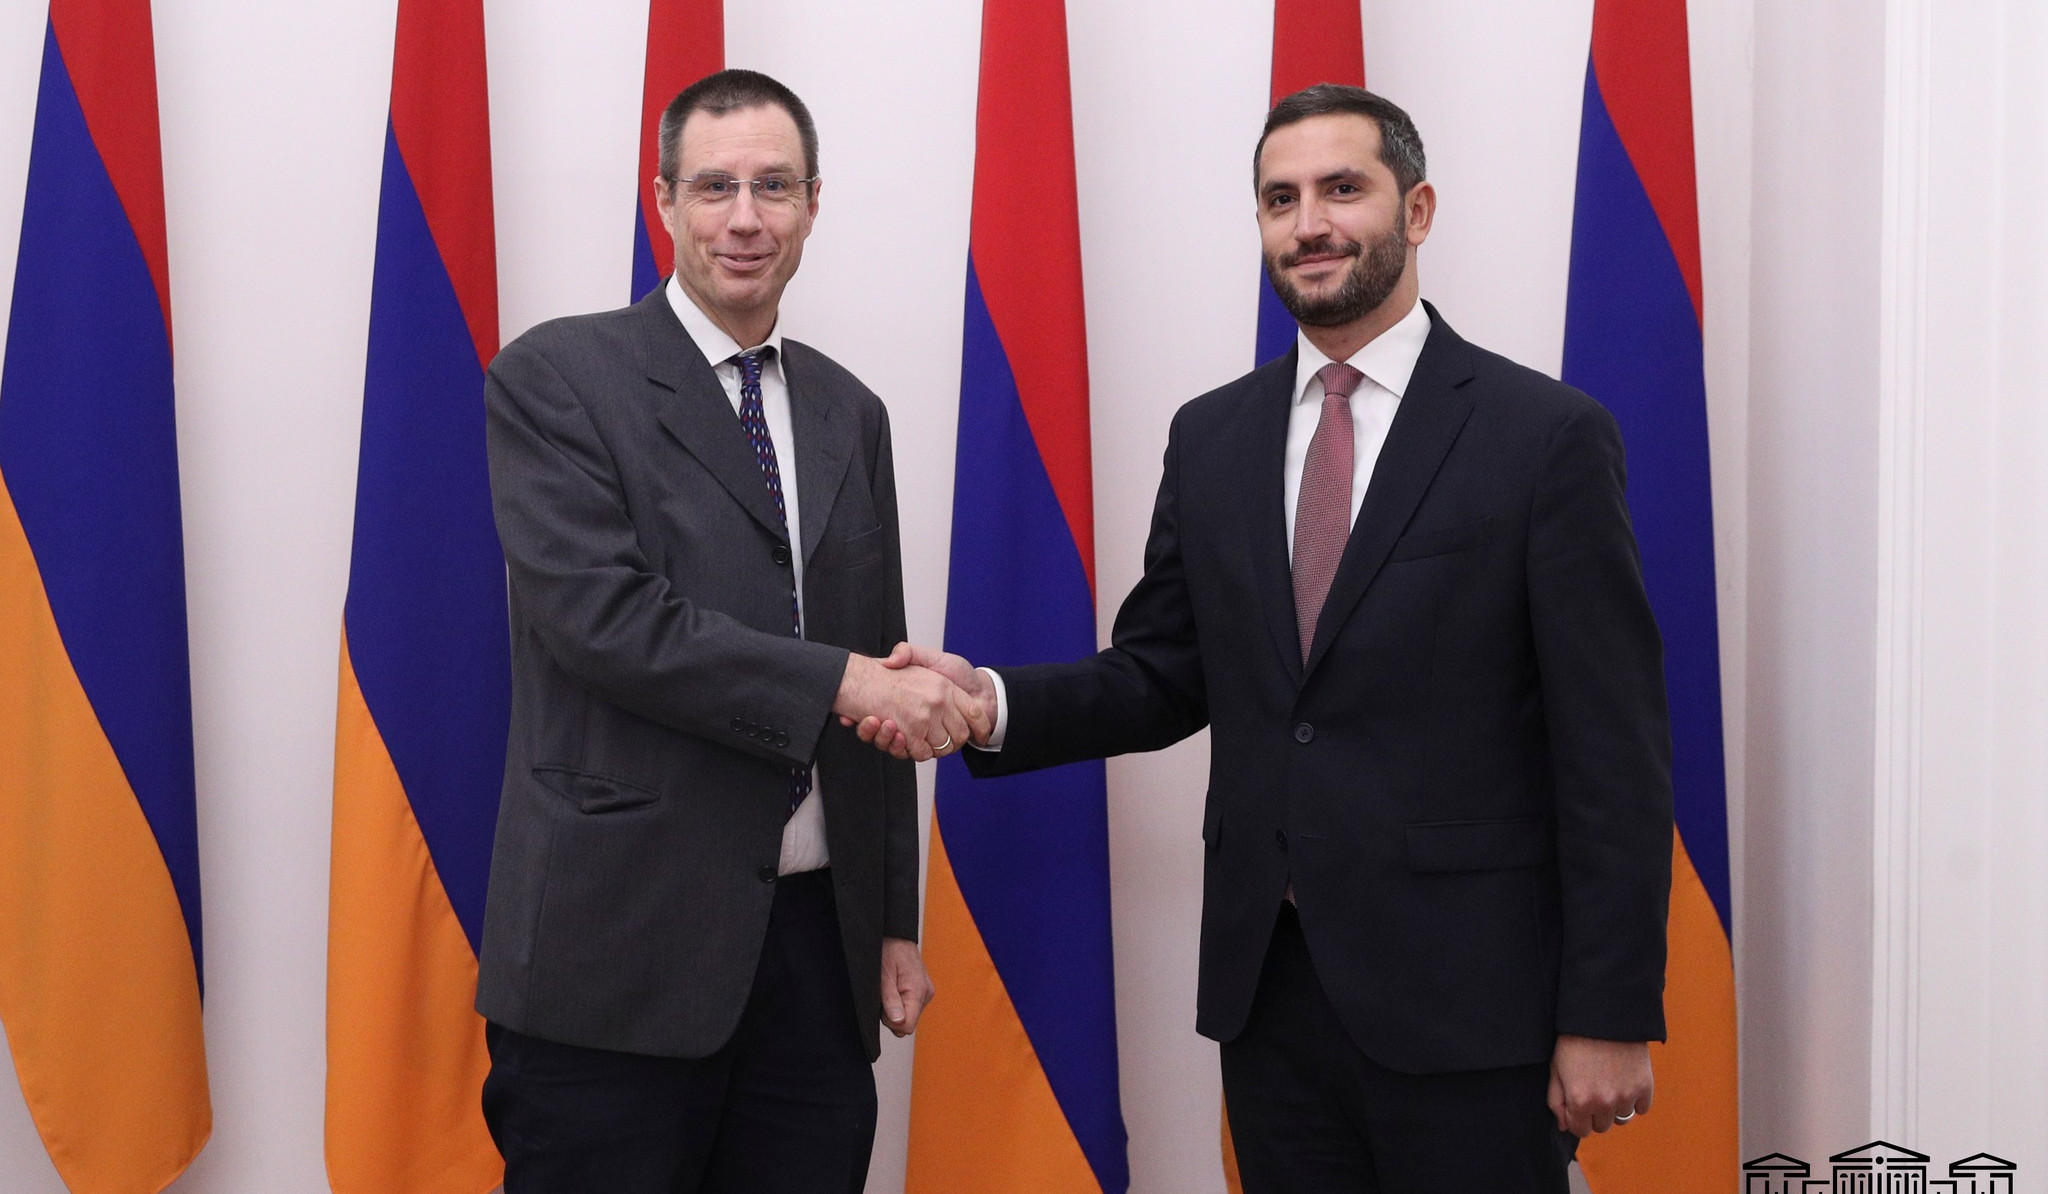 Քննարկվել են հայ-ավստրիական համագործակցությանը վերաբերող հարցեր